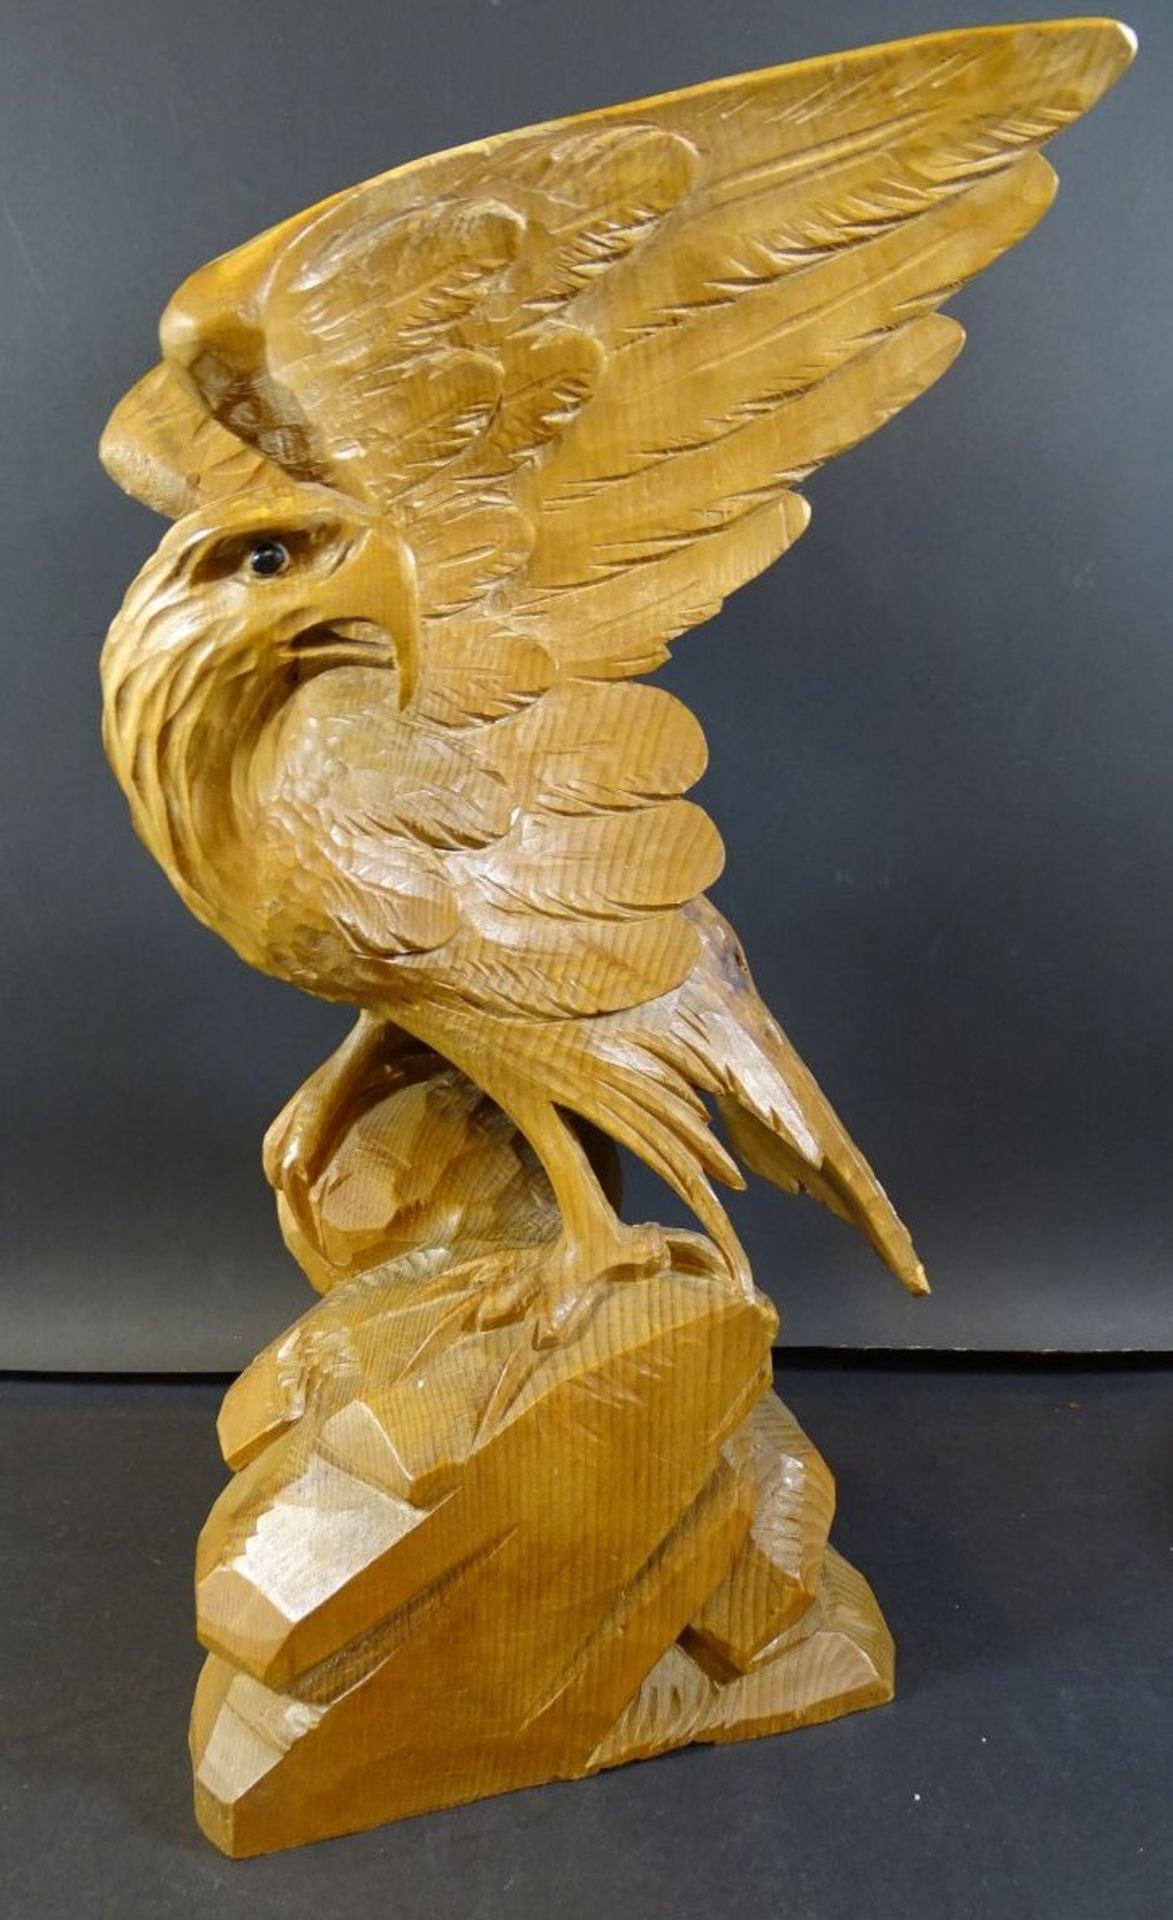 geschnitzter Holz-Adler, eine Flügelspitze fehlt, H-38 cm